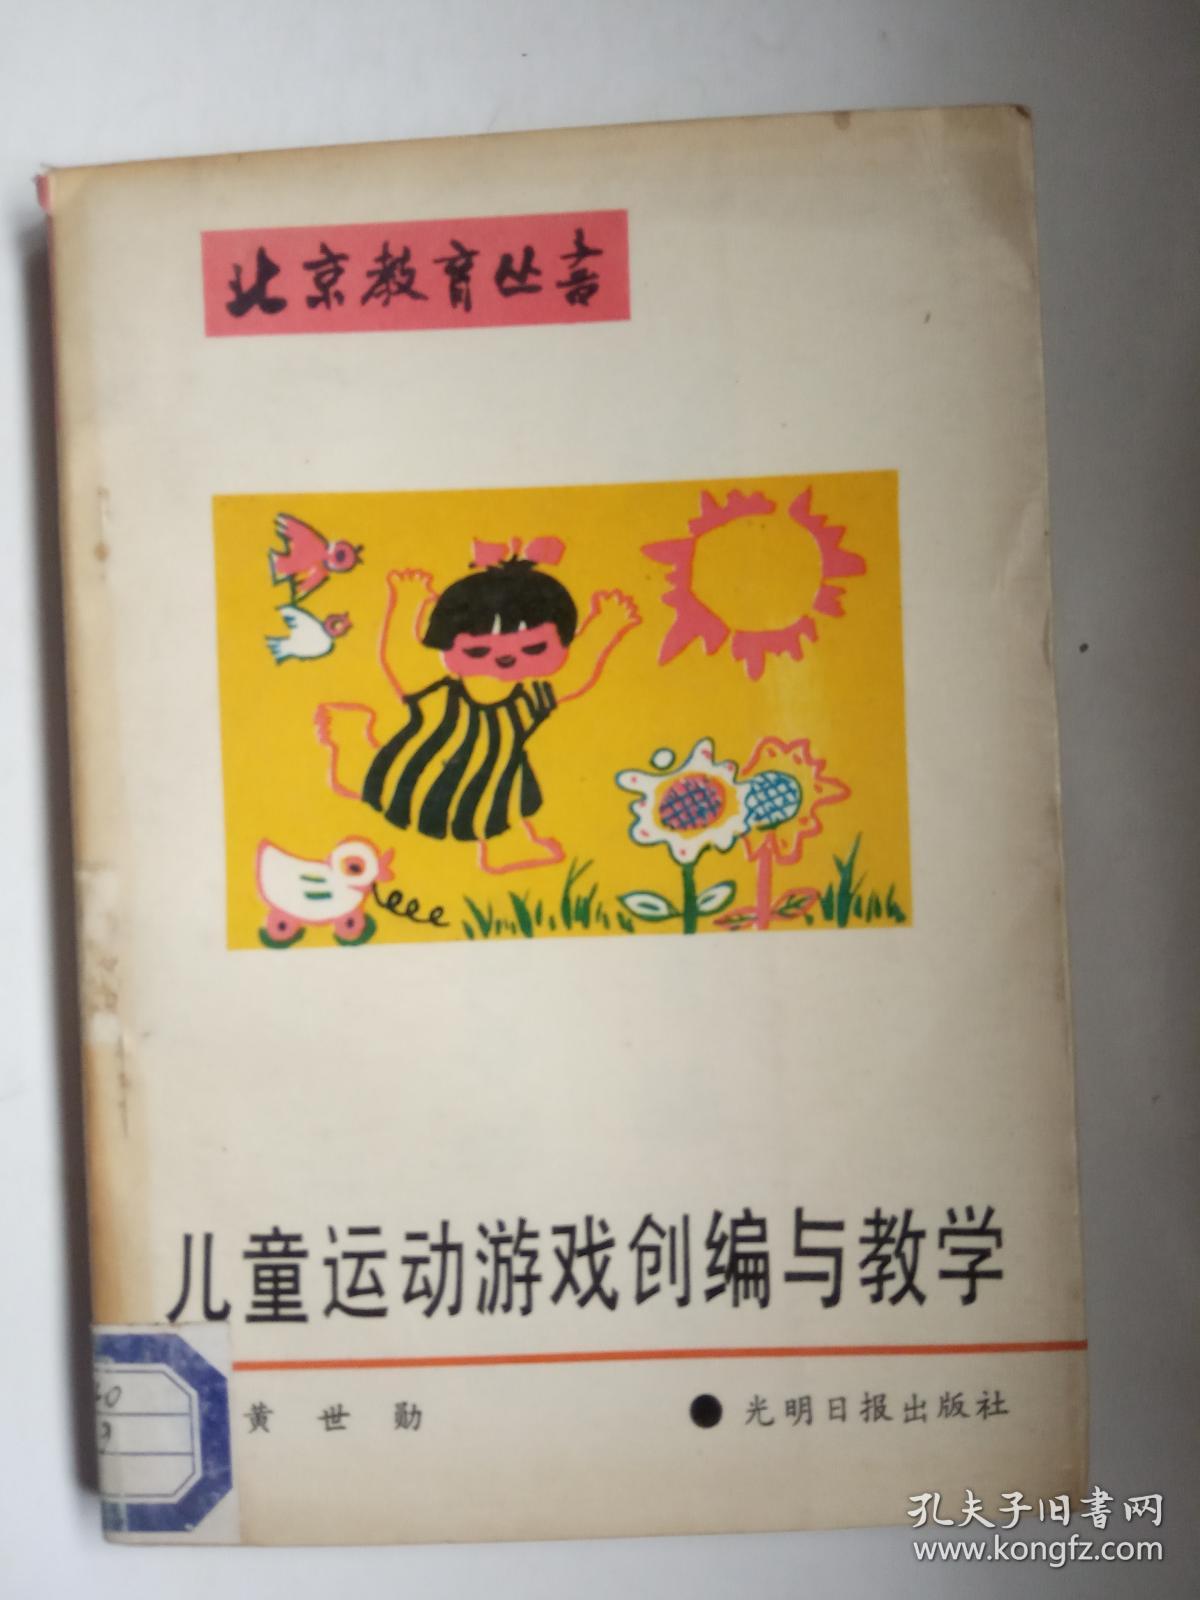 北京教育丛书《儿童运动游戏创编与教学》 【馆藏】